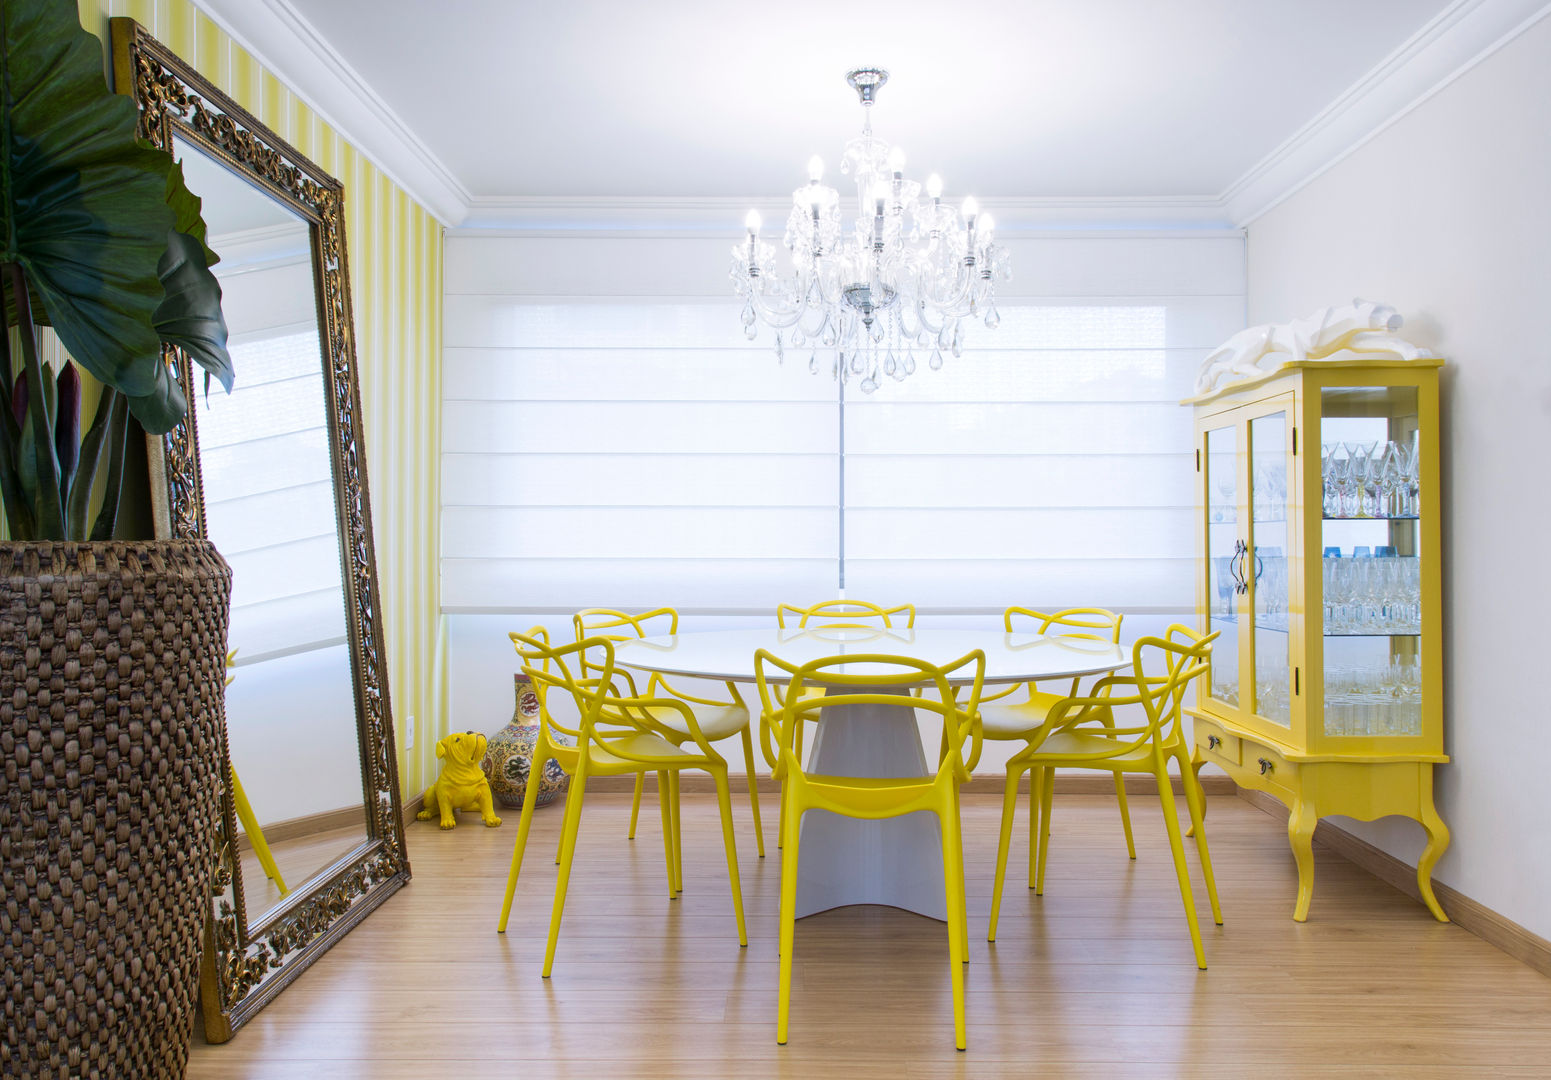 SALA DE JANTAR arquiteta aclaene de mello Salas de jantar modernas Madeira Amarelo sala de jantar,cristaleira,espelho,lustre